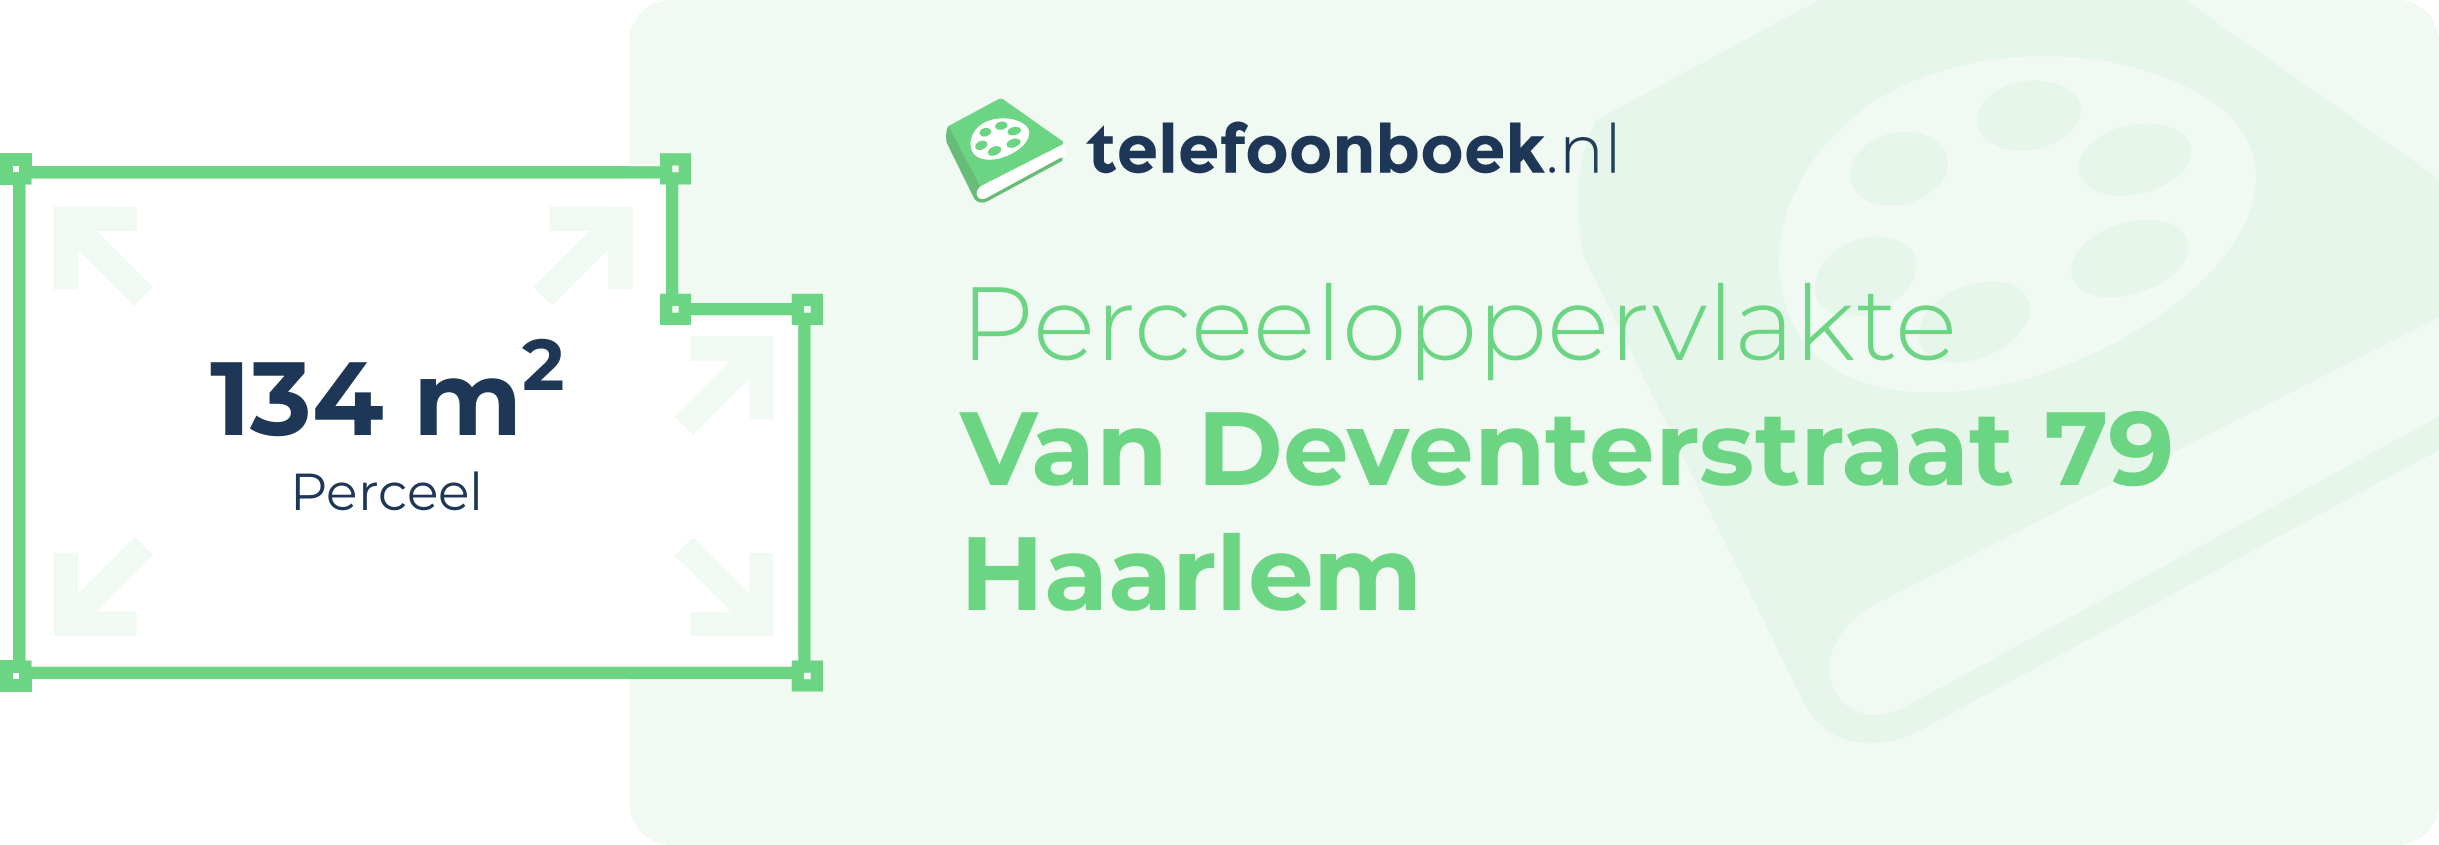 Perceeloppervlakte Van Deventerstraat 79 Haarlem